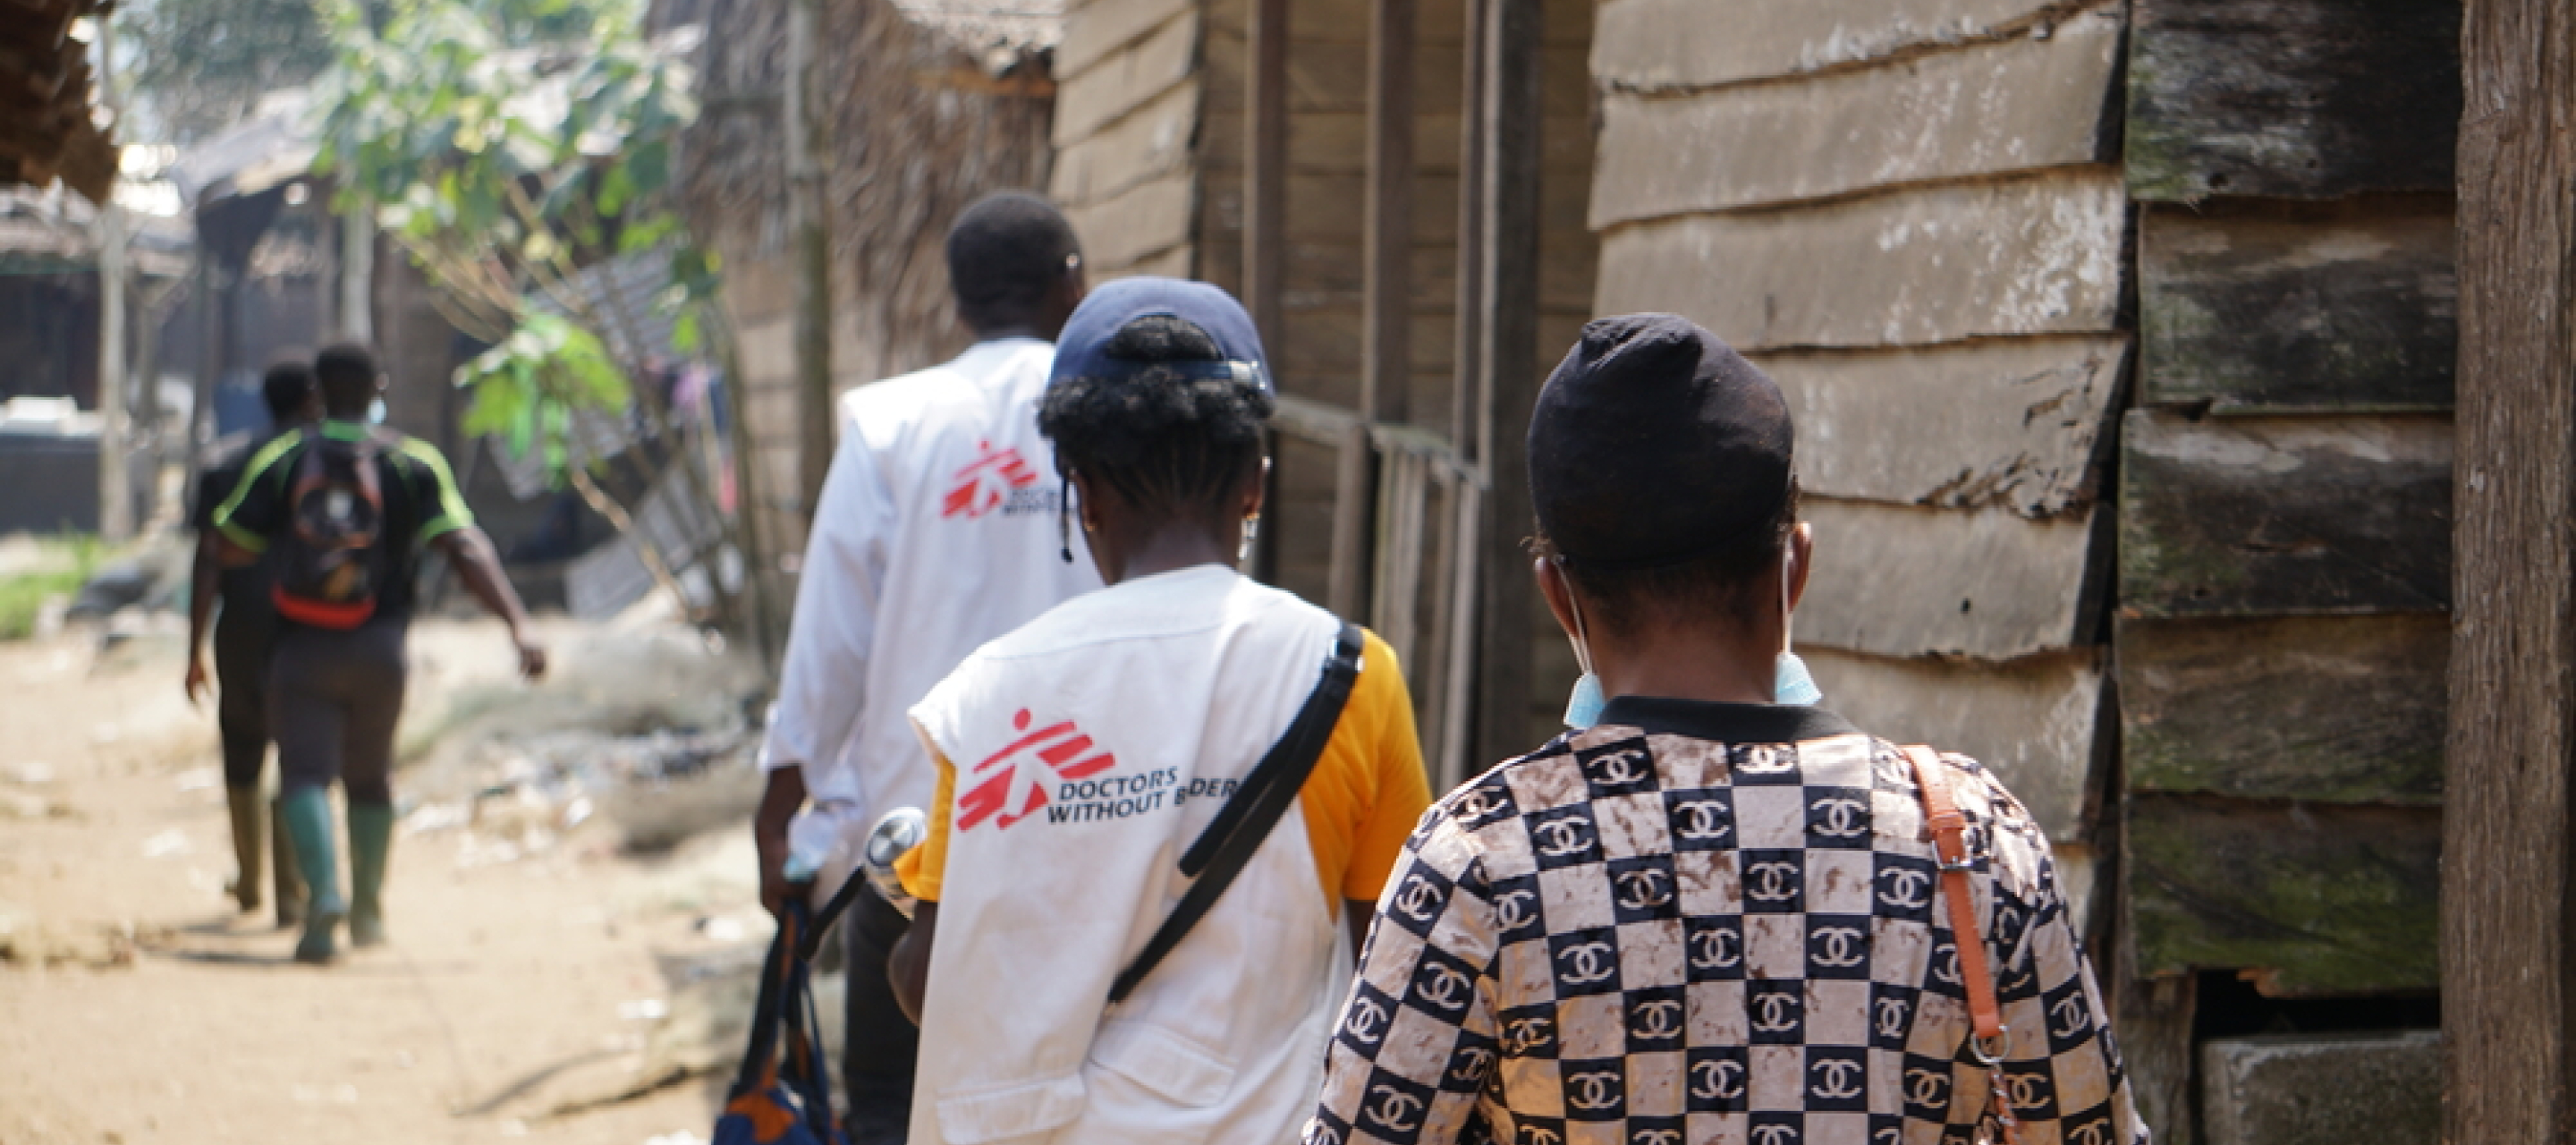 Mitarbeitende von Ärzte ohne Grenzen machen sich auf den Weg ins Dorf, um dort die Menschen gegen Cholera zu impfen.